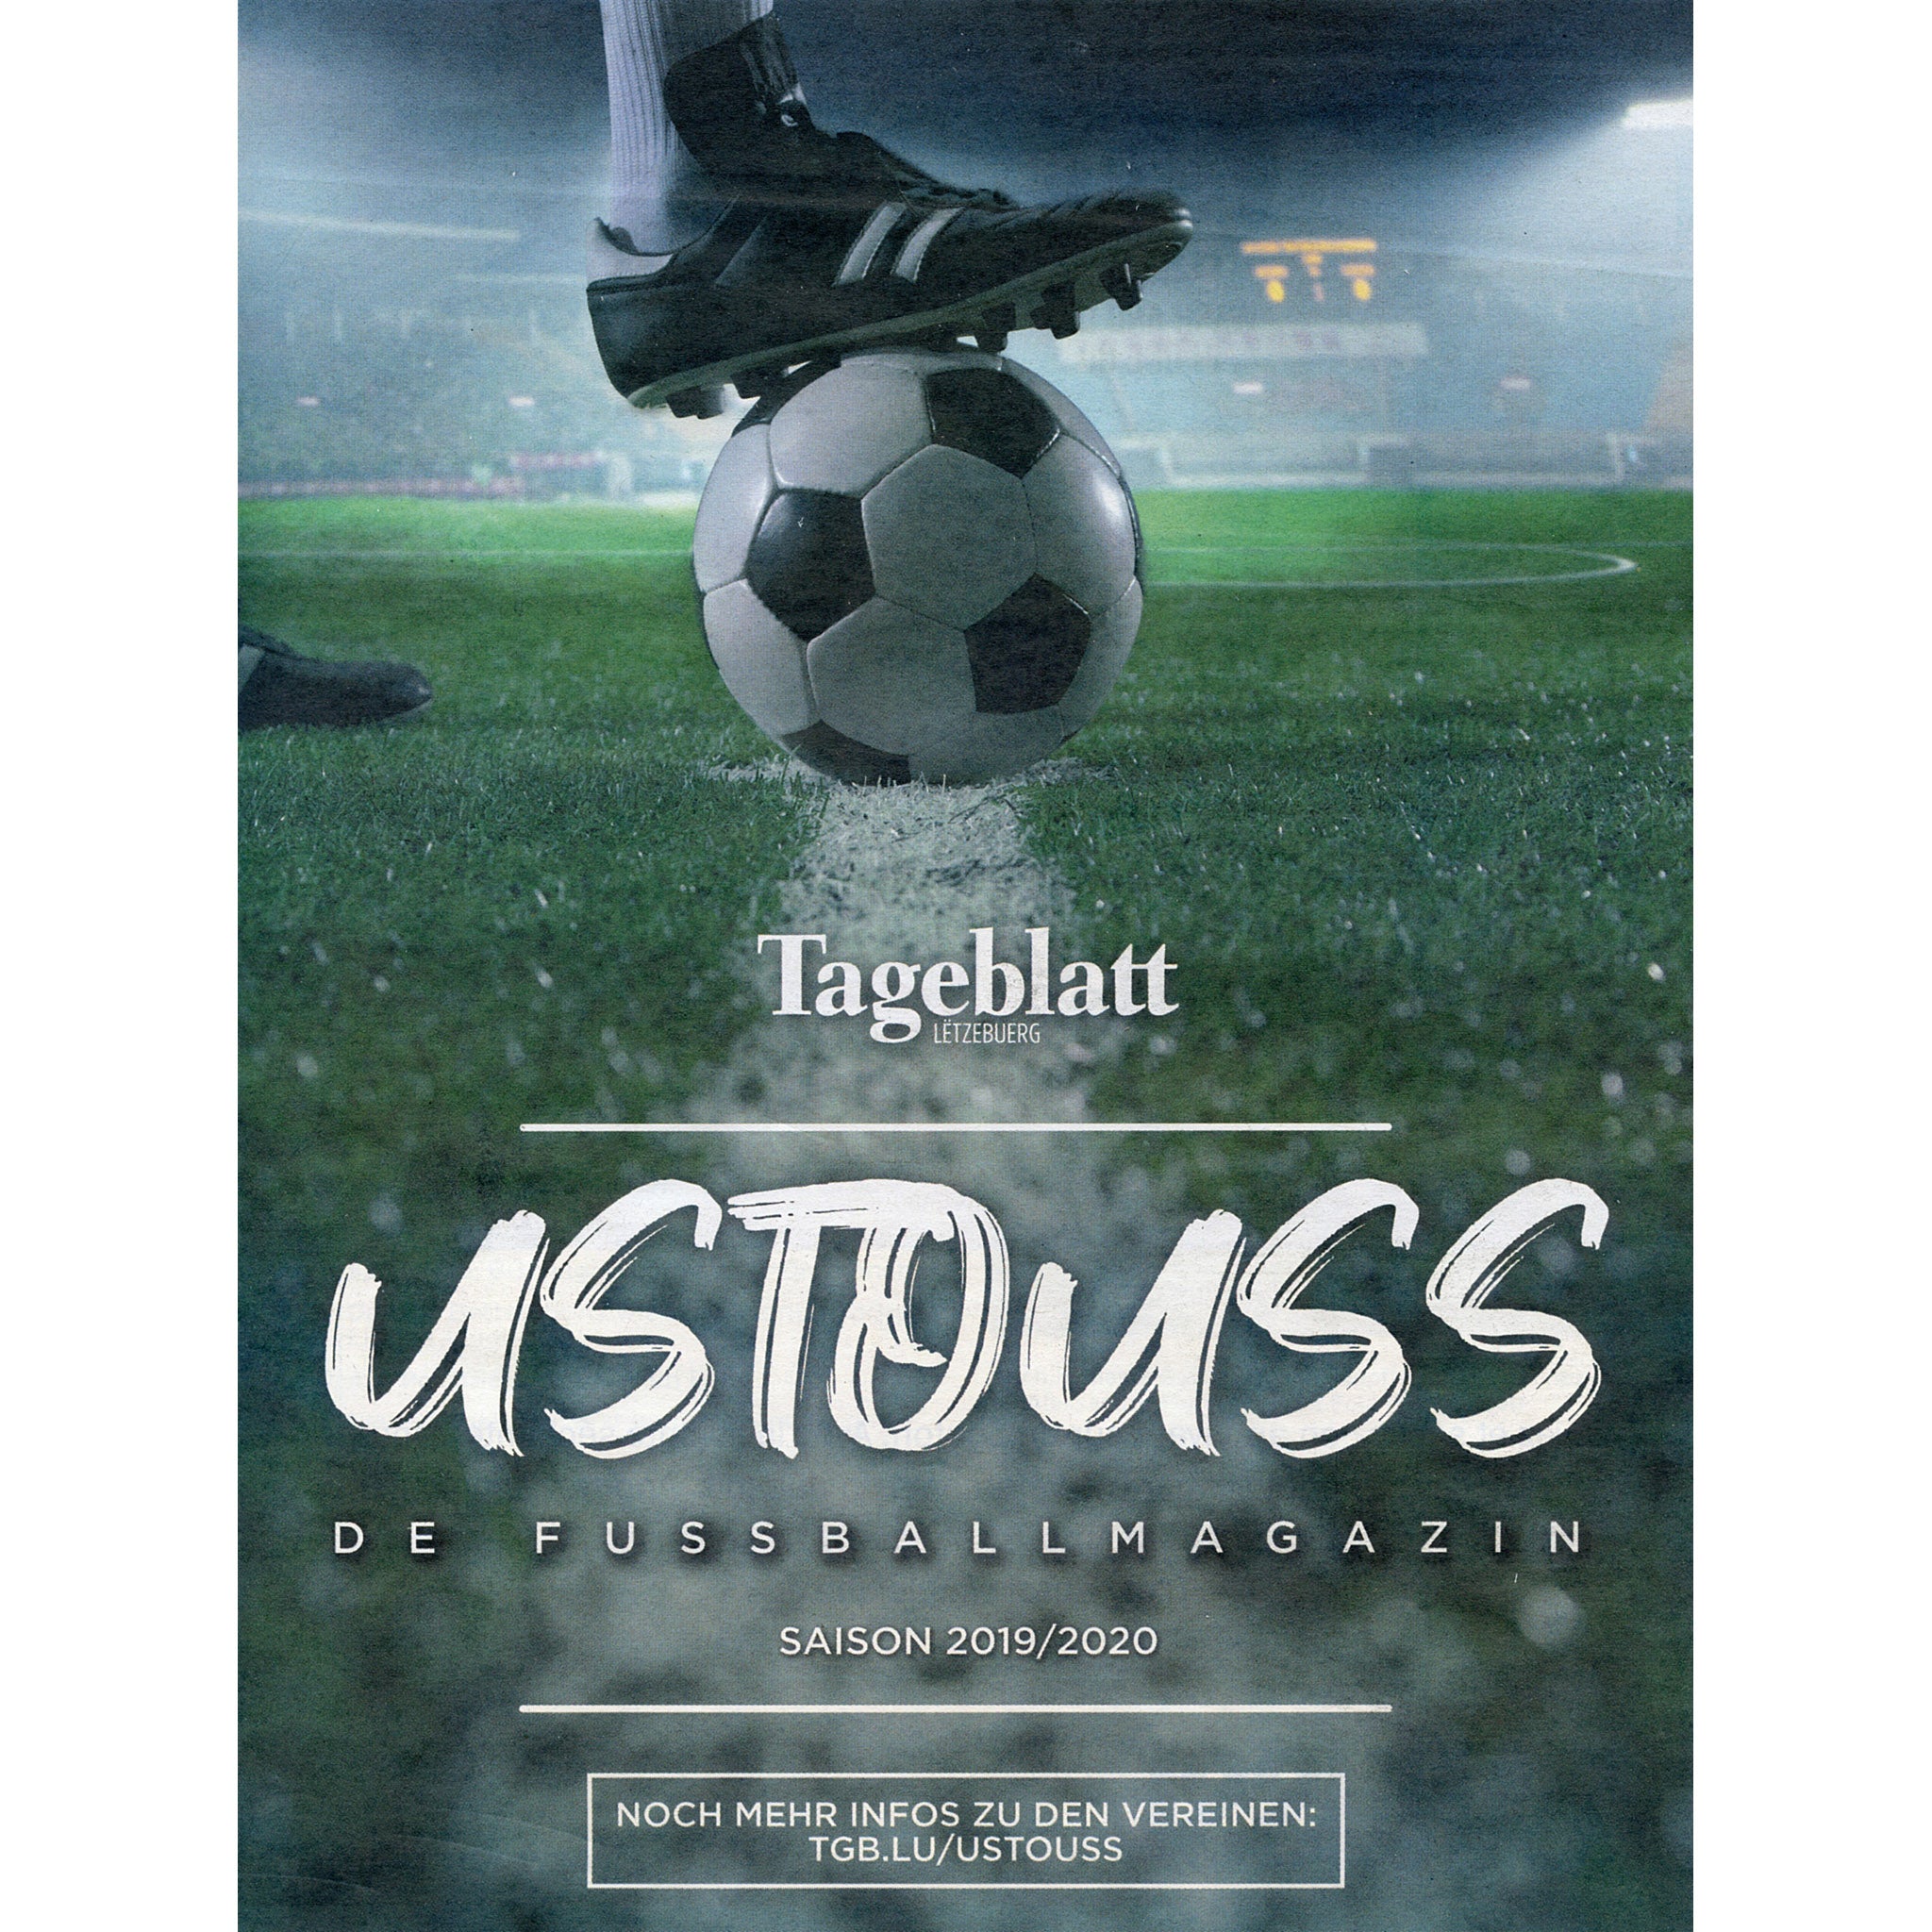 Tageblatt Ustouss de Fussballmagazin Saison 2019/2020 (Luxembourg Season Preview)